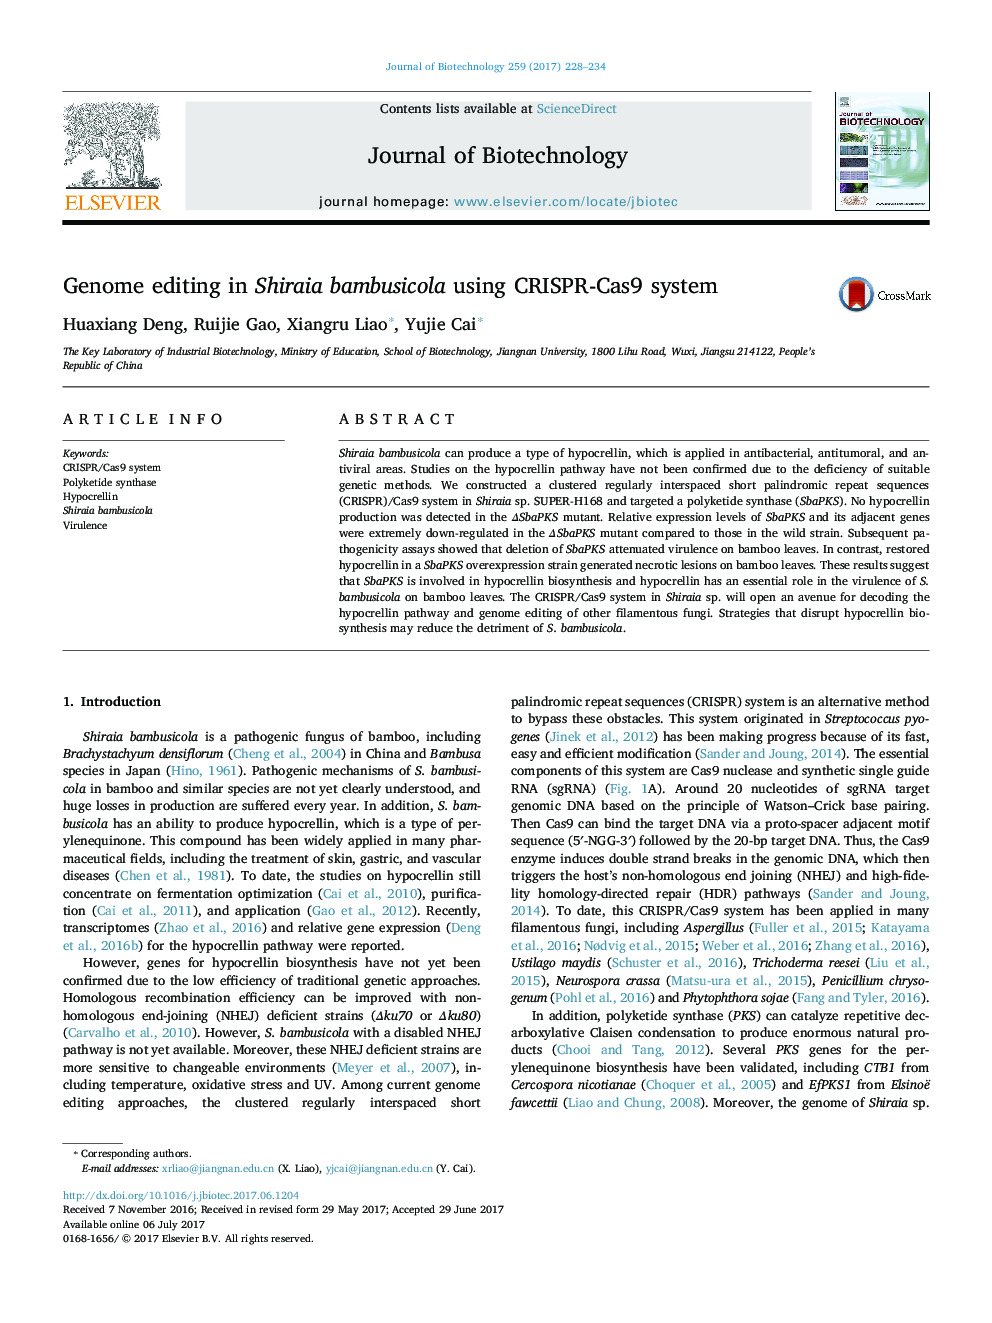 Genome editing in Shiraia bambusicola using CRISPR-Cas9 system